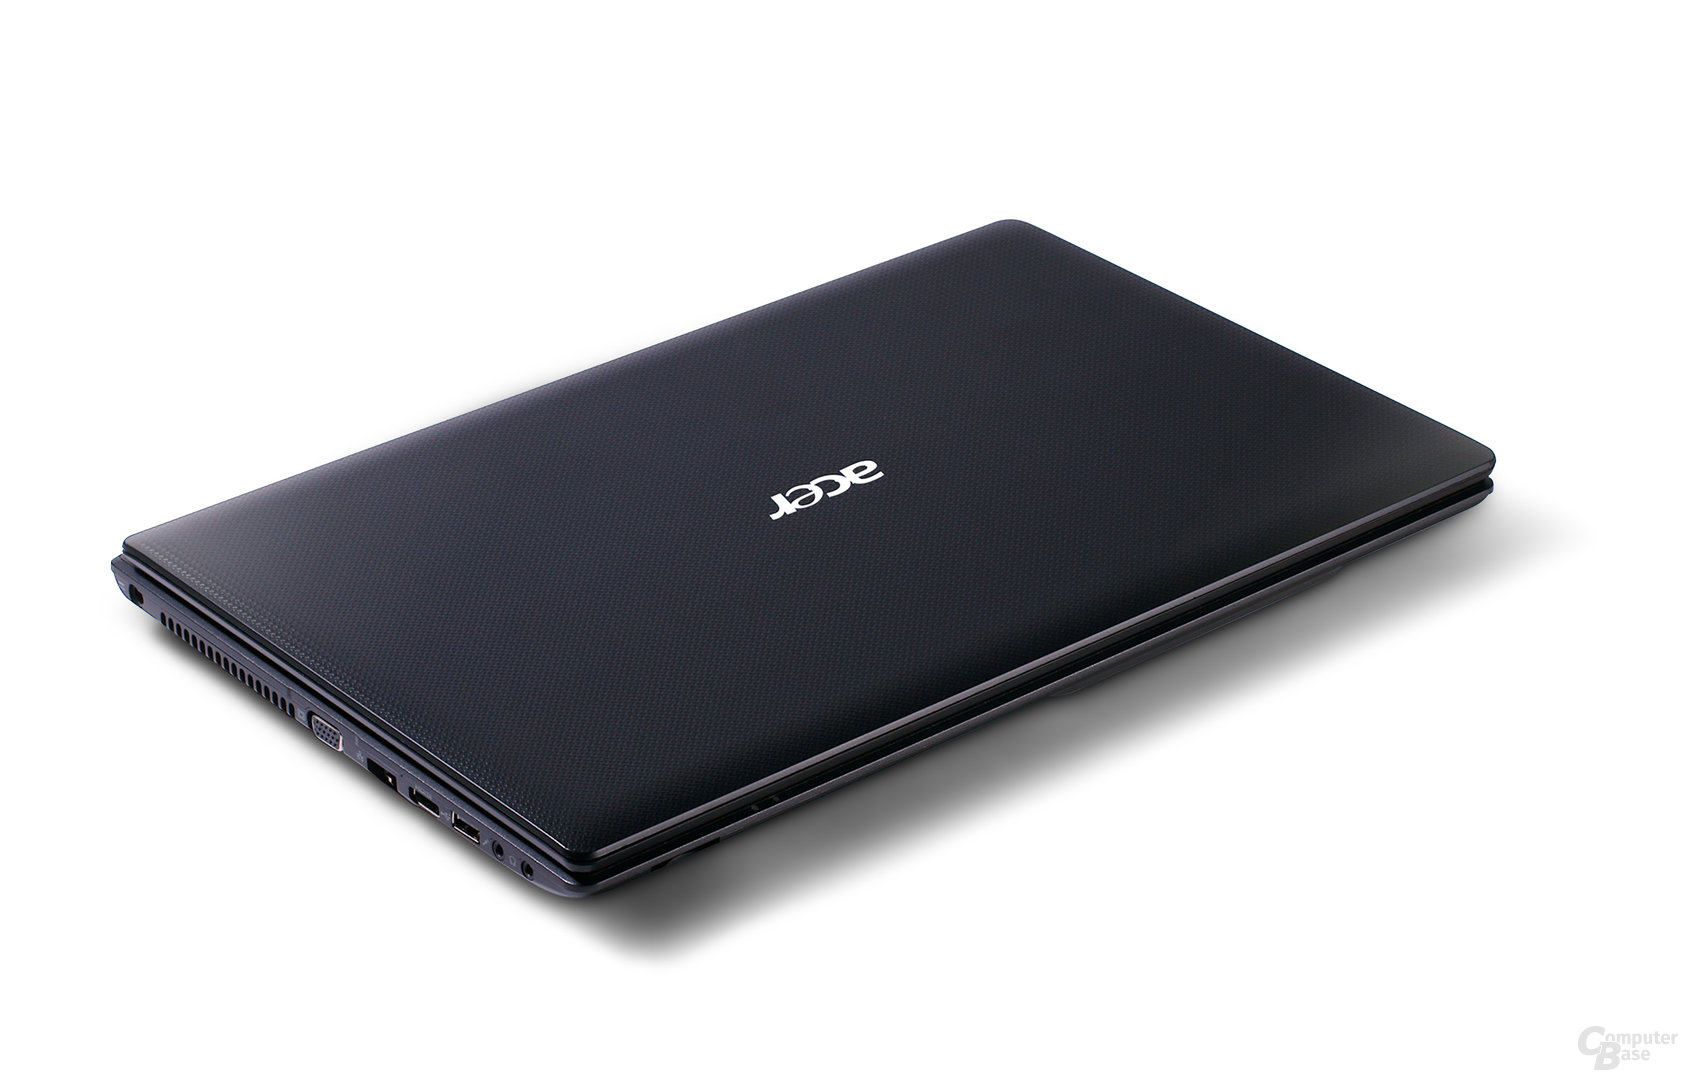 Acer Aspire 5253 in schwarz